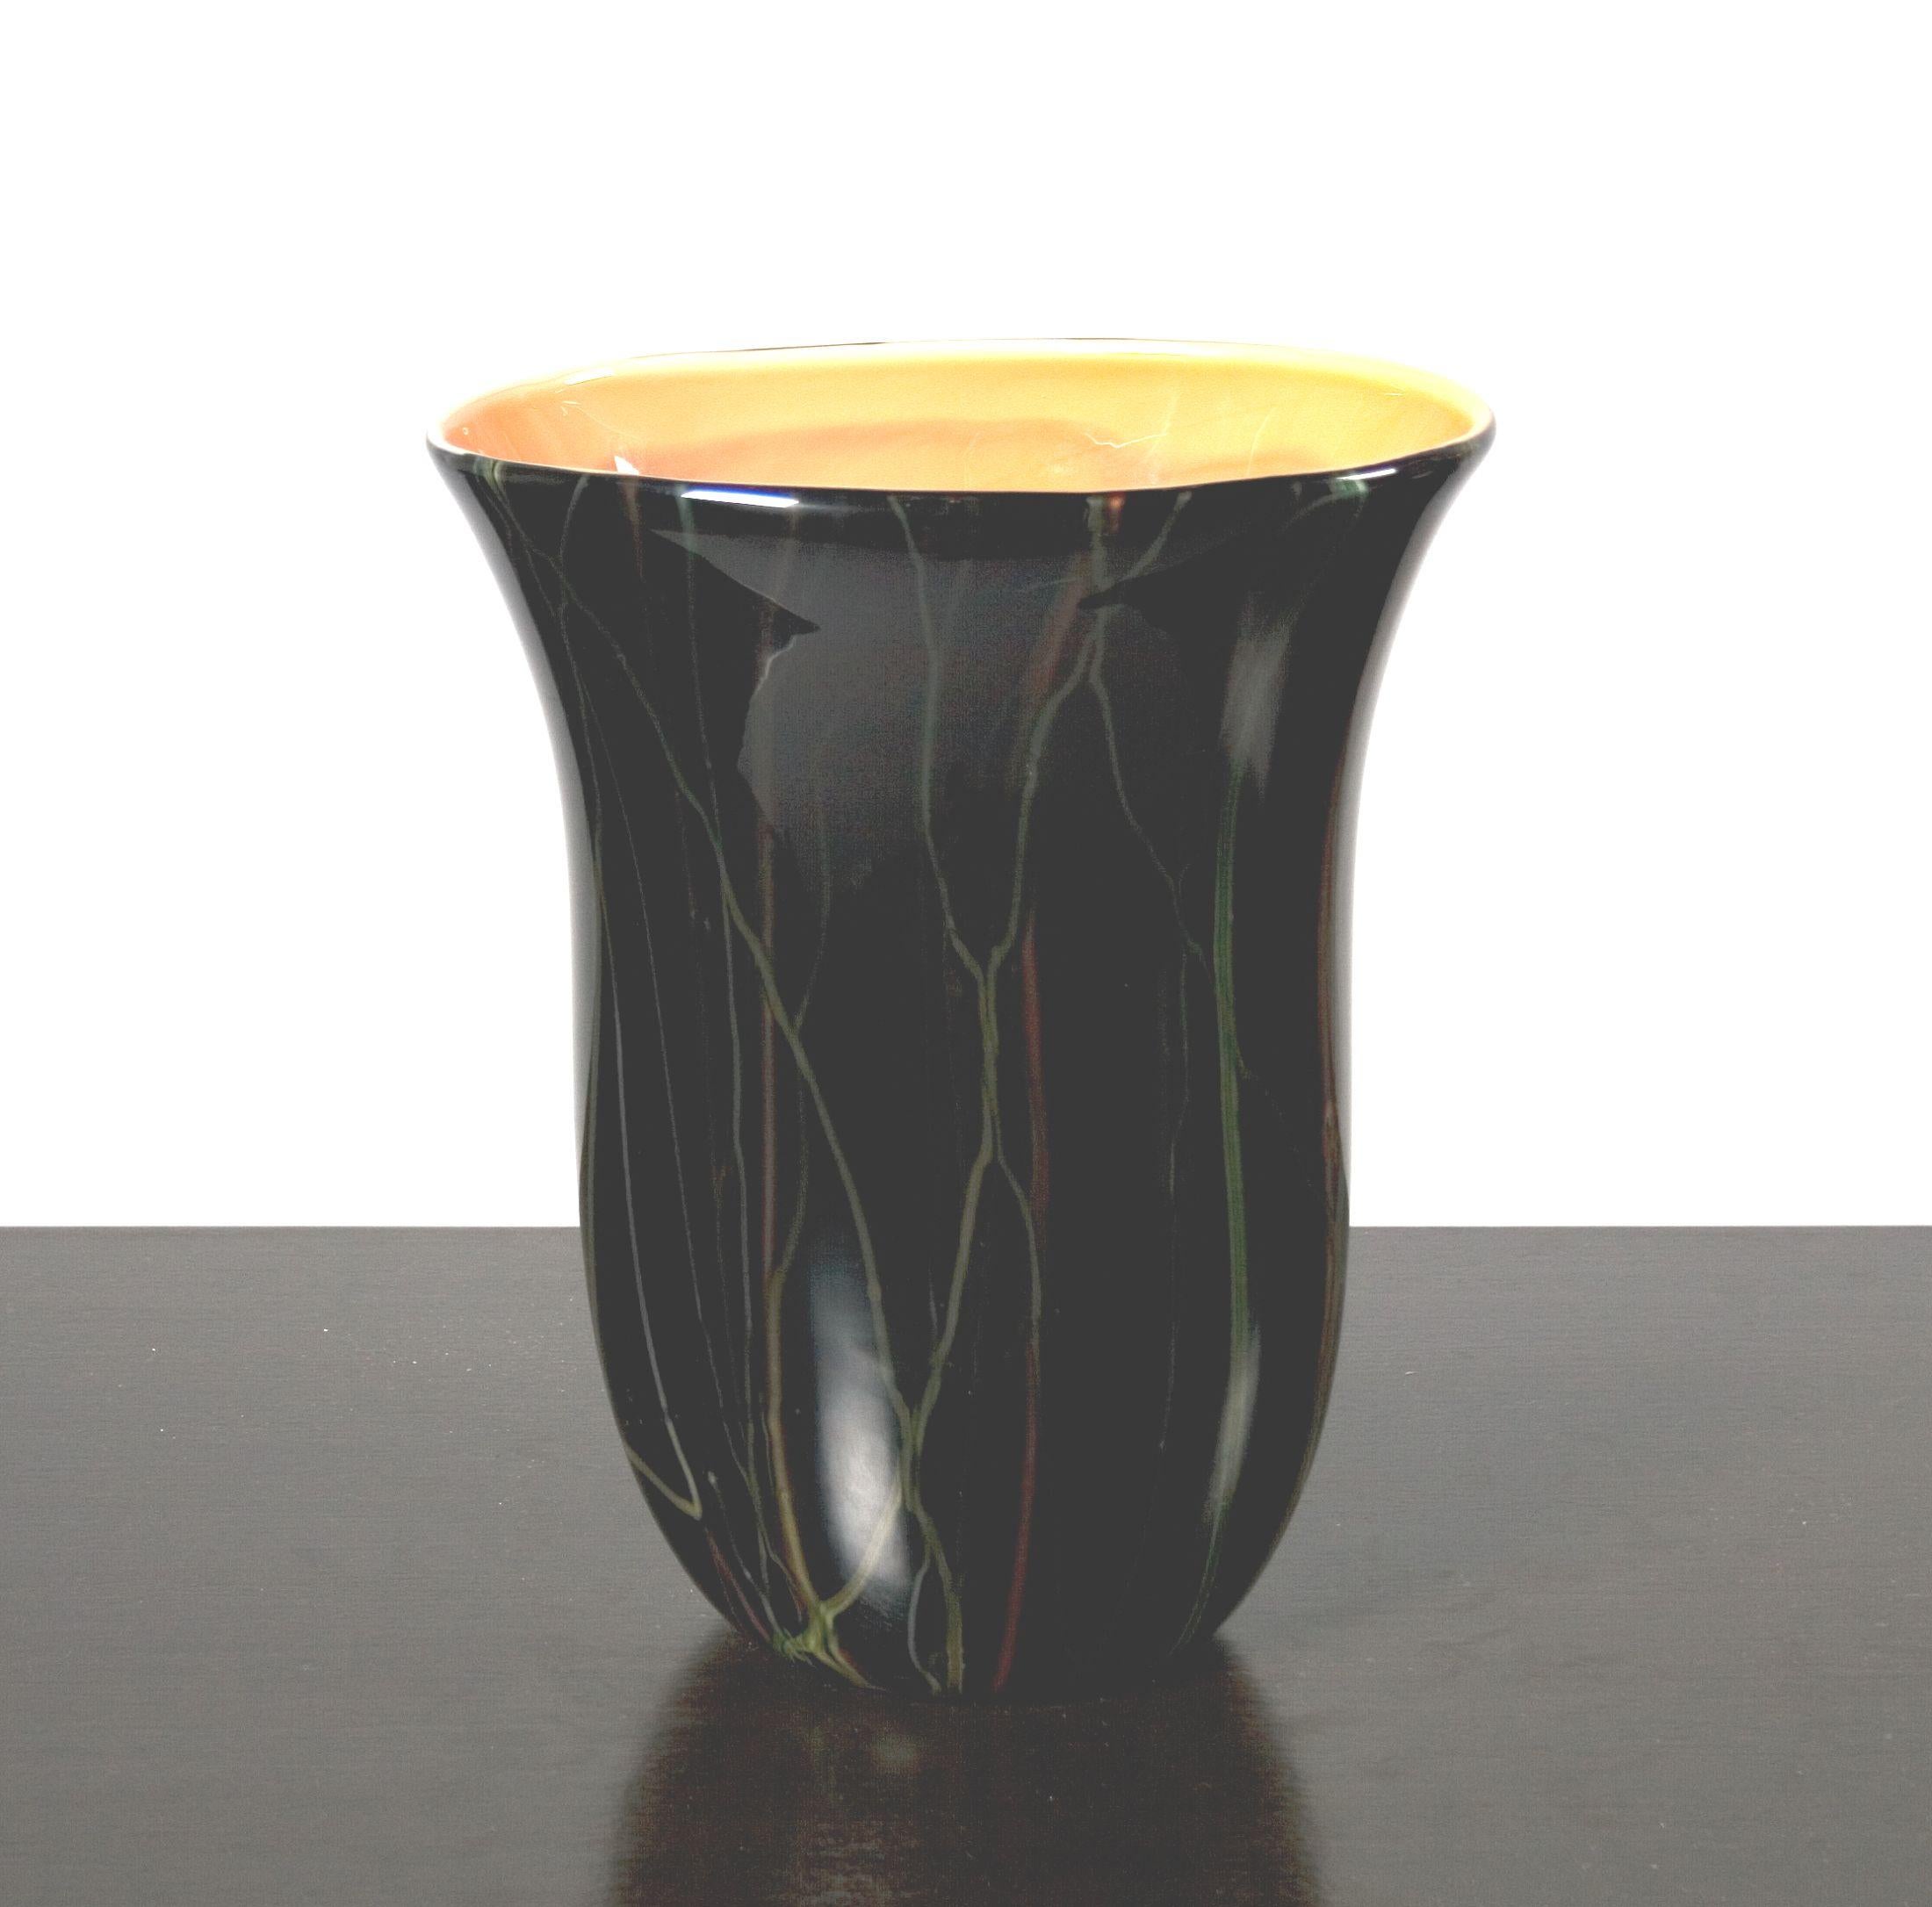 Unusual black glass vase with coral colored glass interior, signed Moretti.